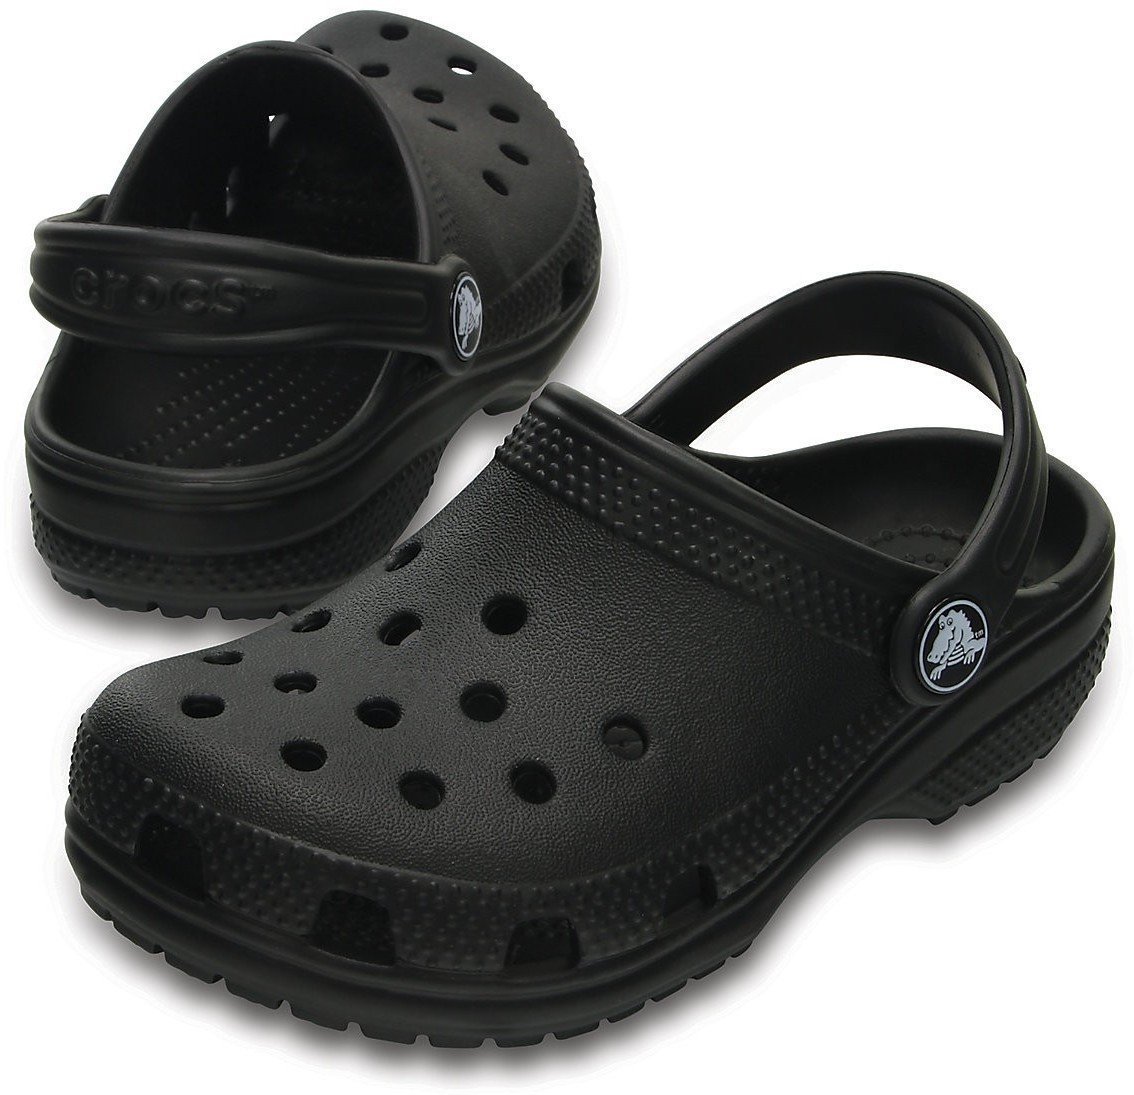 Dječje cipele za jedrenje Crocs Kids' Classic Clog Black 22-23